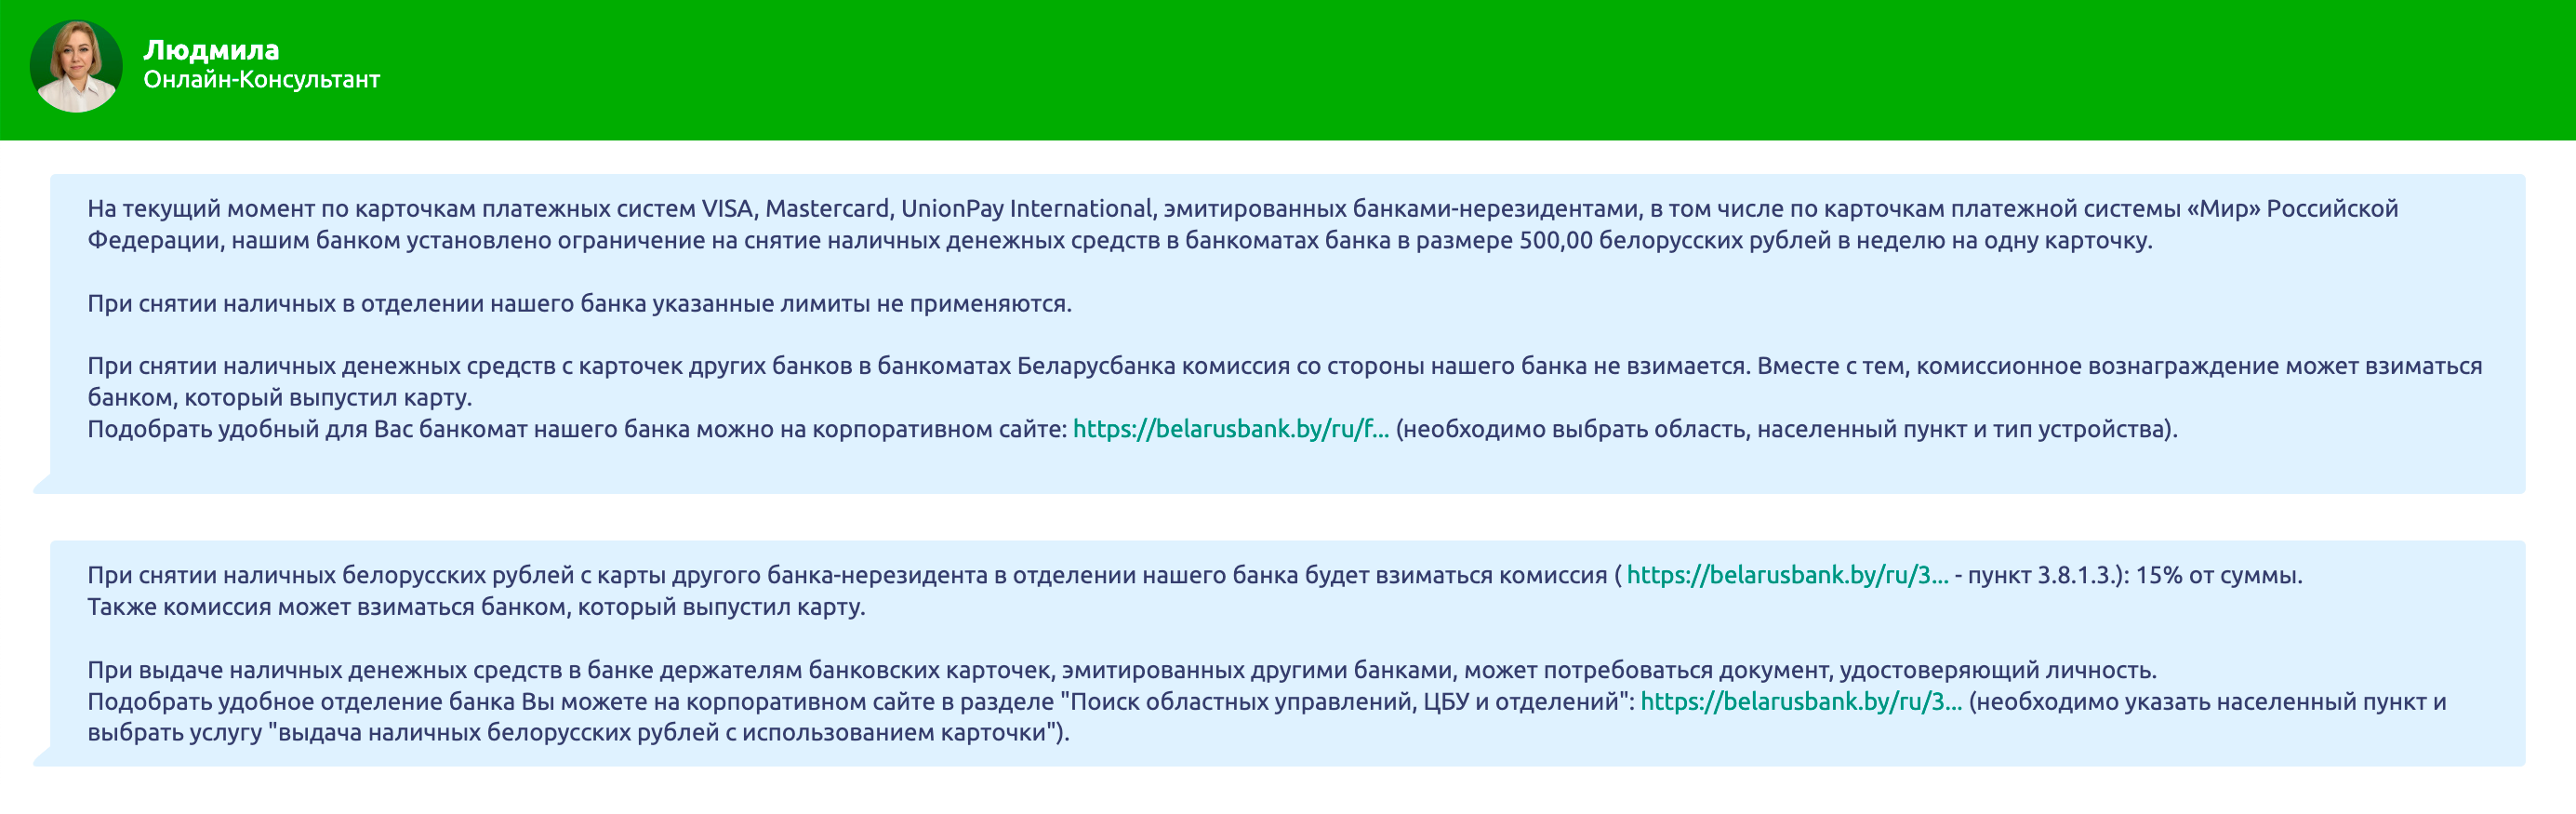 В службе поддержки «Беларусбанка» подтверждают, что с российской карты «Мир» в их банкомате удастся снять не больше 500 BYN (10 970 ₽) в неделю